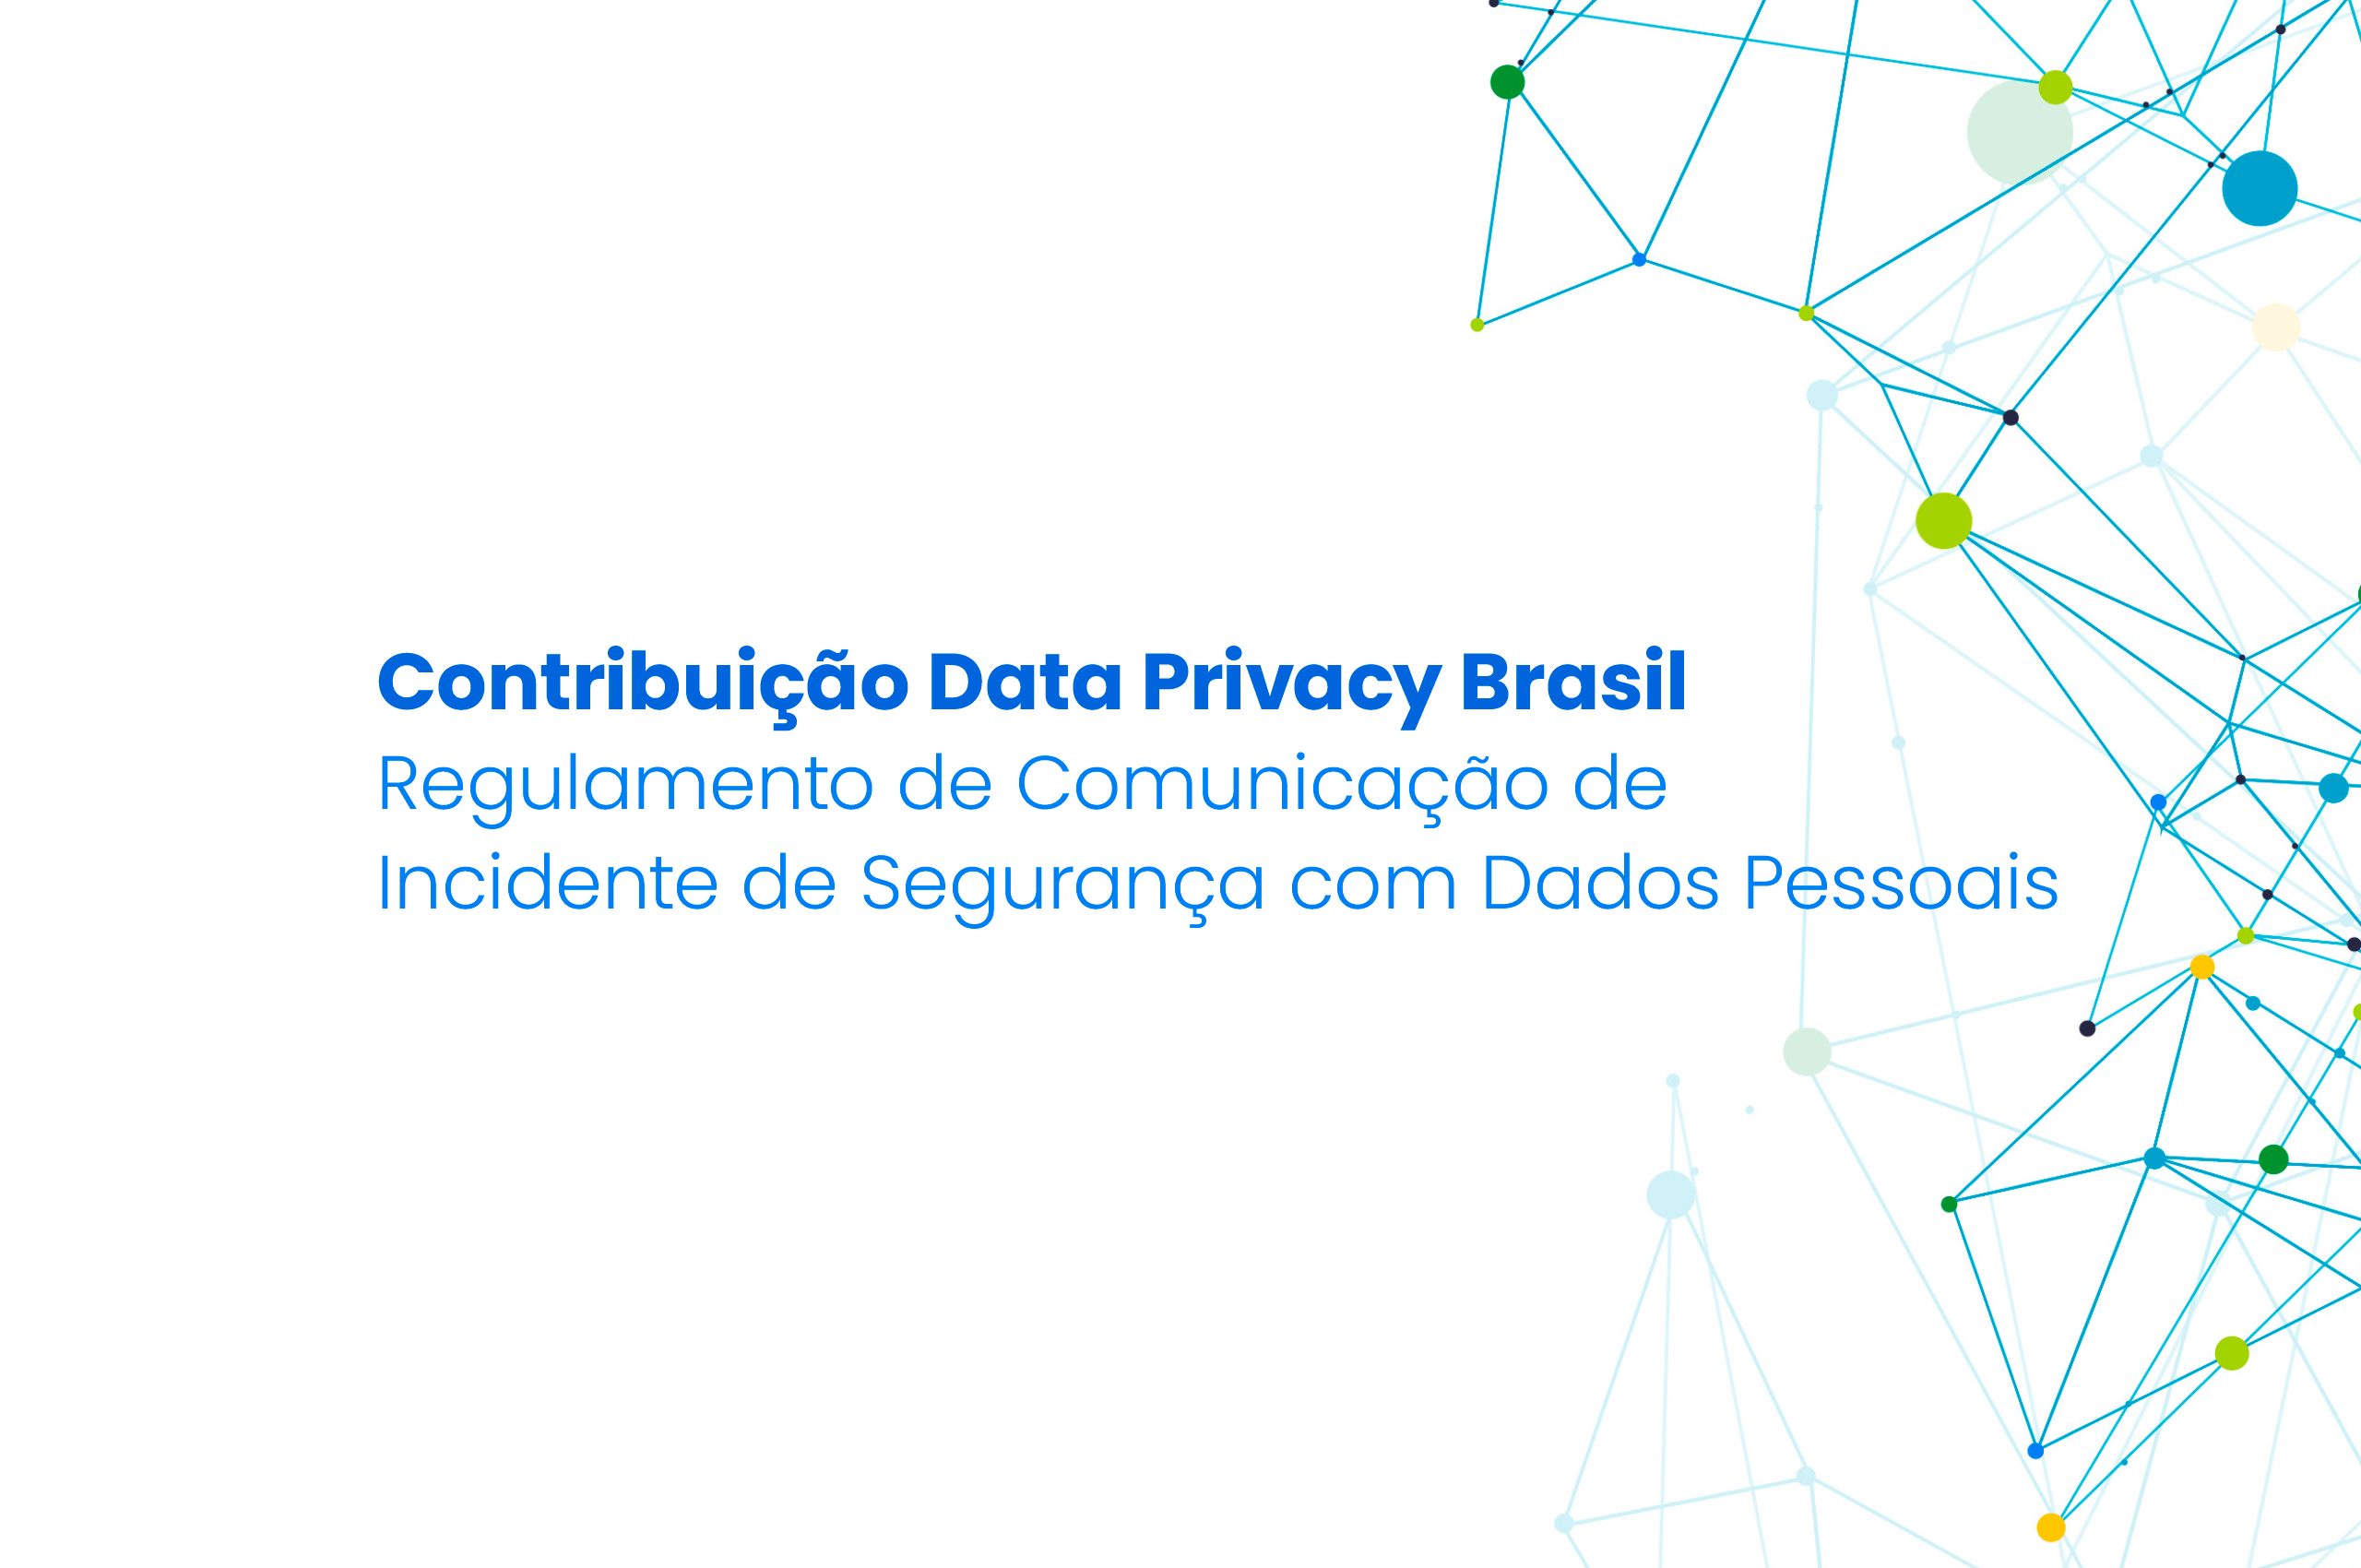 Contribuição | Regulamento de Comunicação de Incidente de Segurança com Dados Pessoais